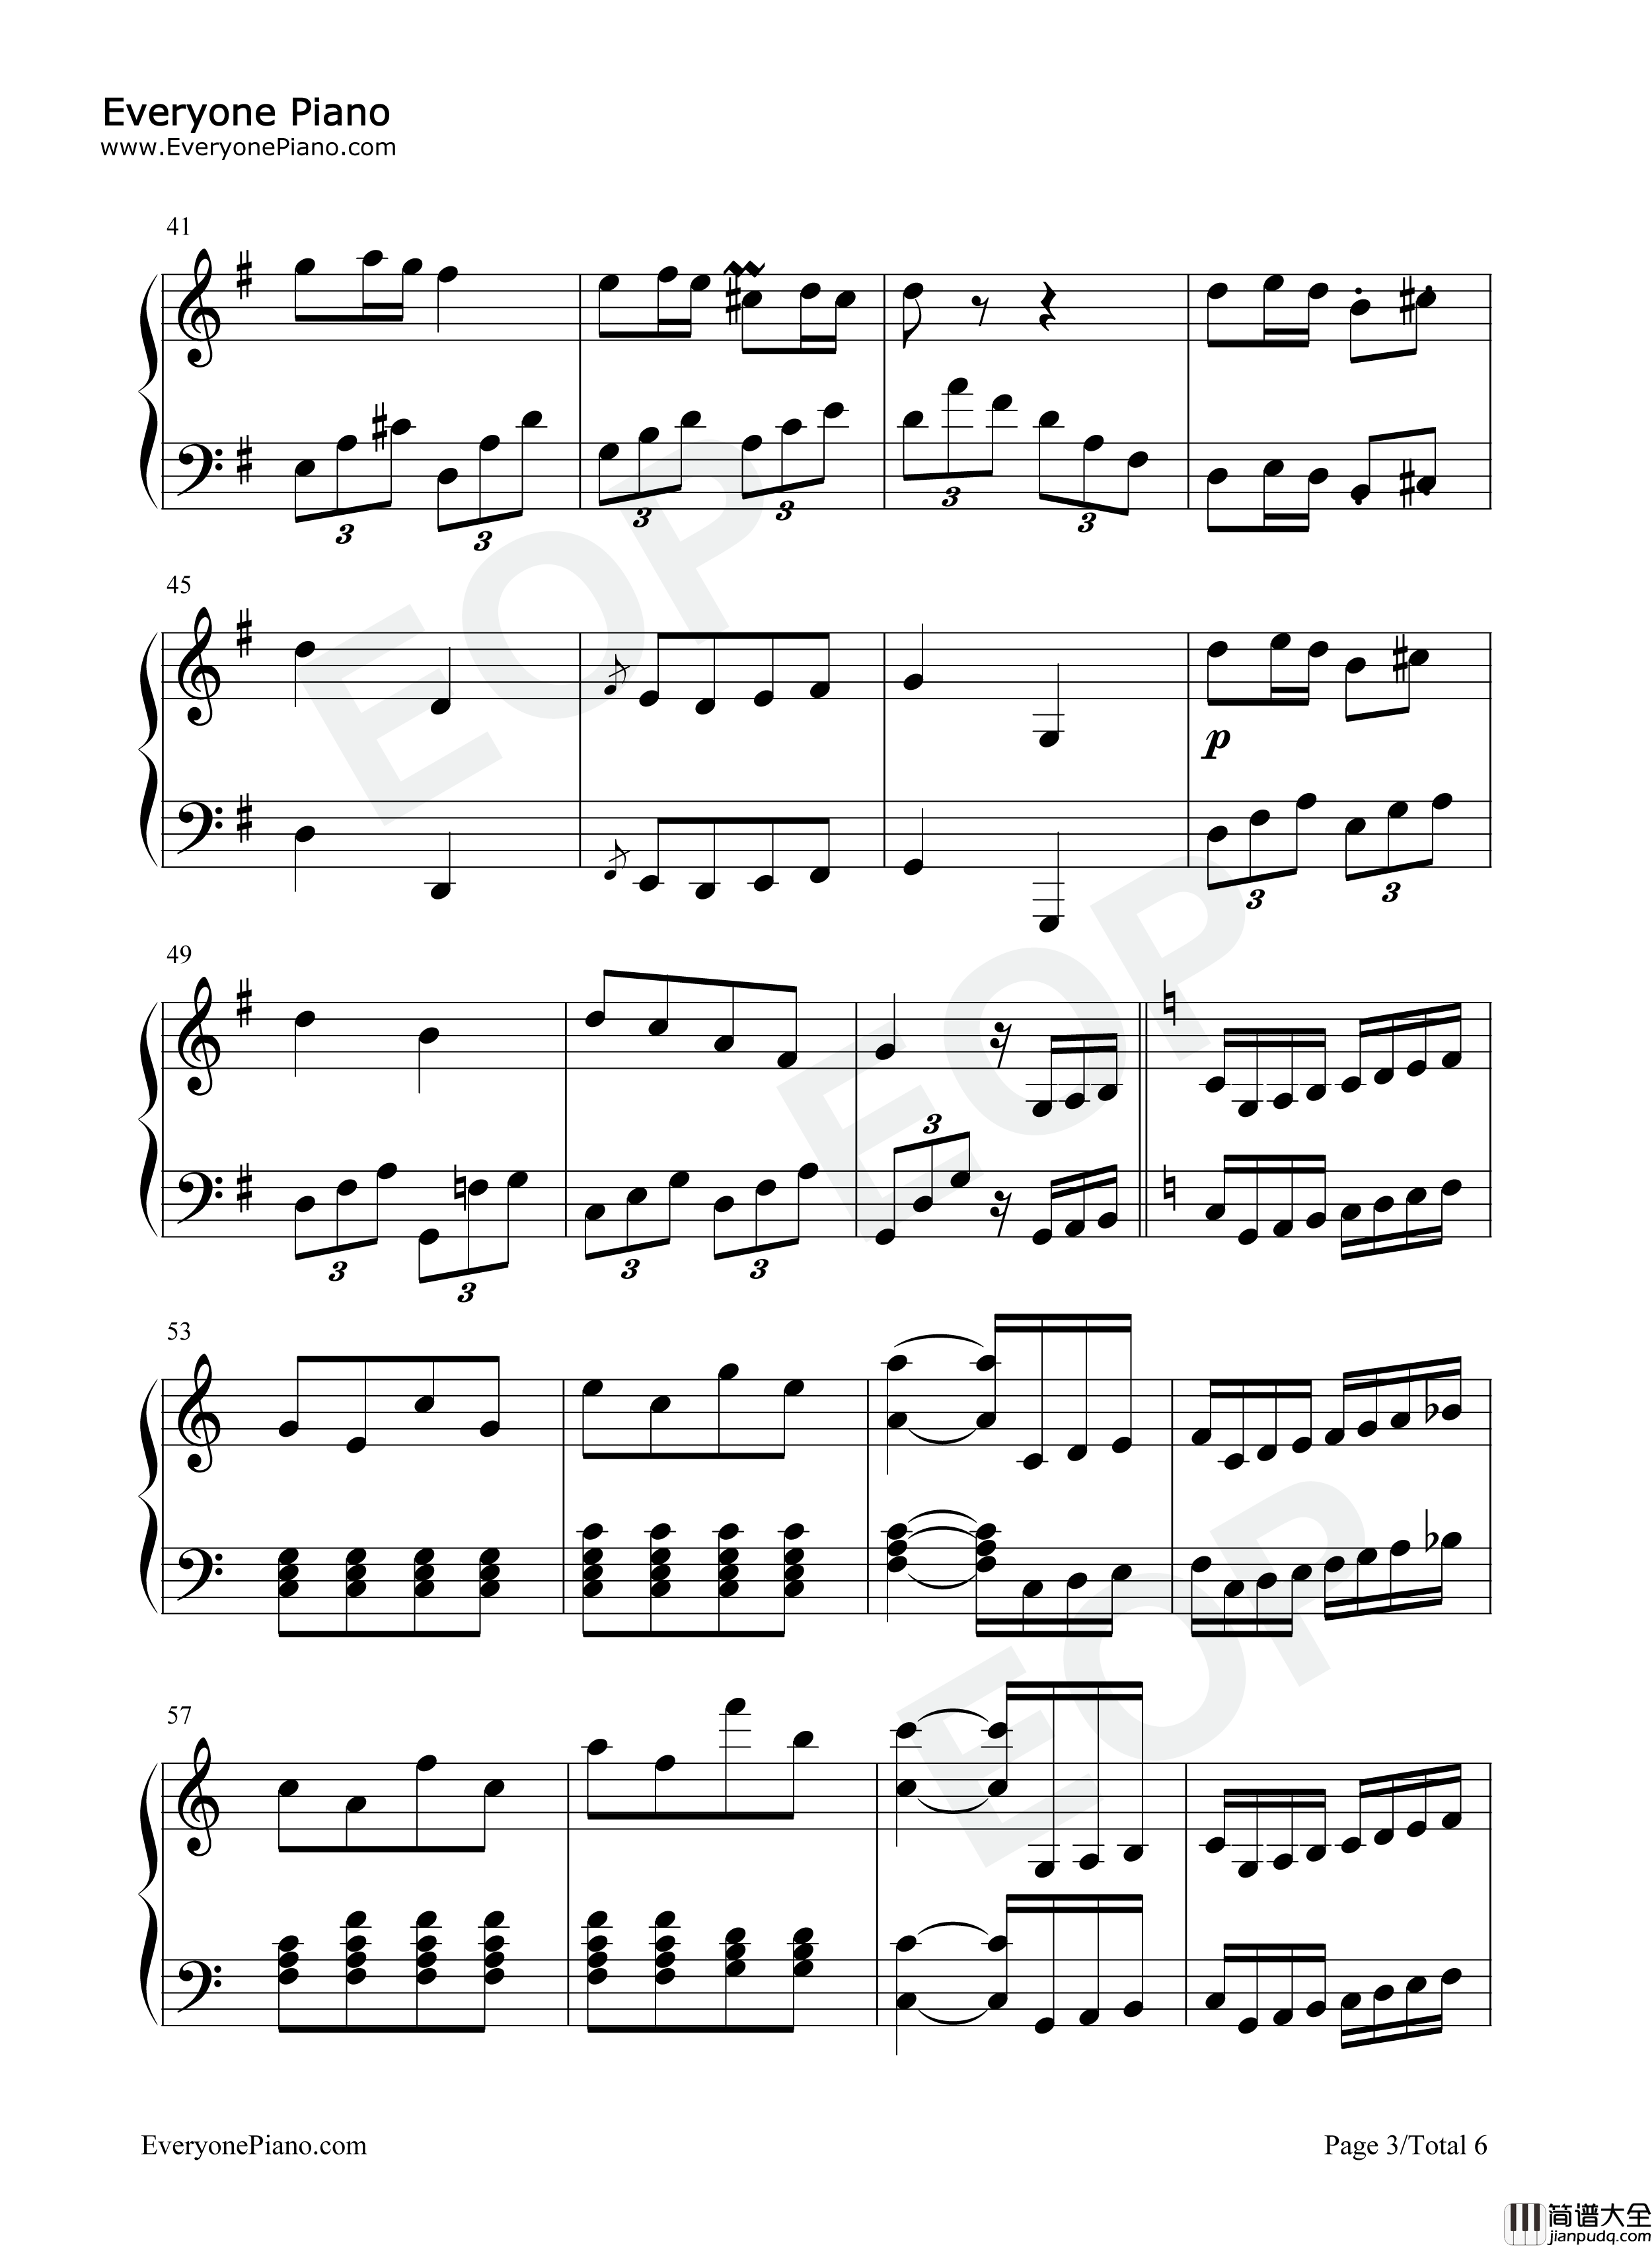 贝多芬第25号钢琴奏鸣曲第三乐章钢琴谱_贝多芬